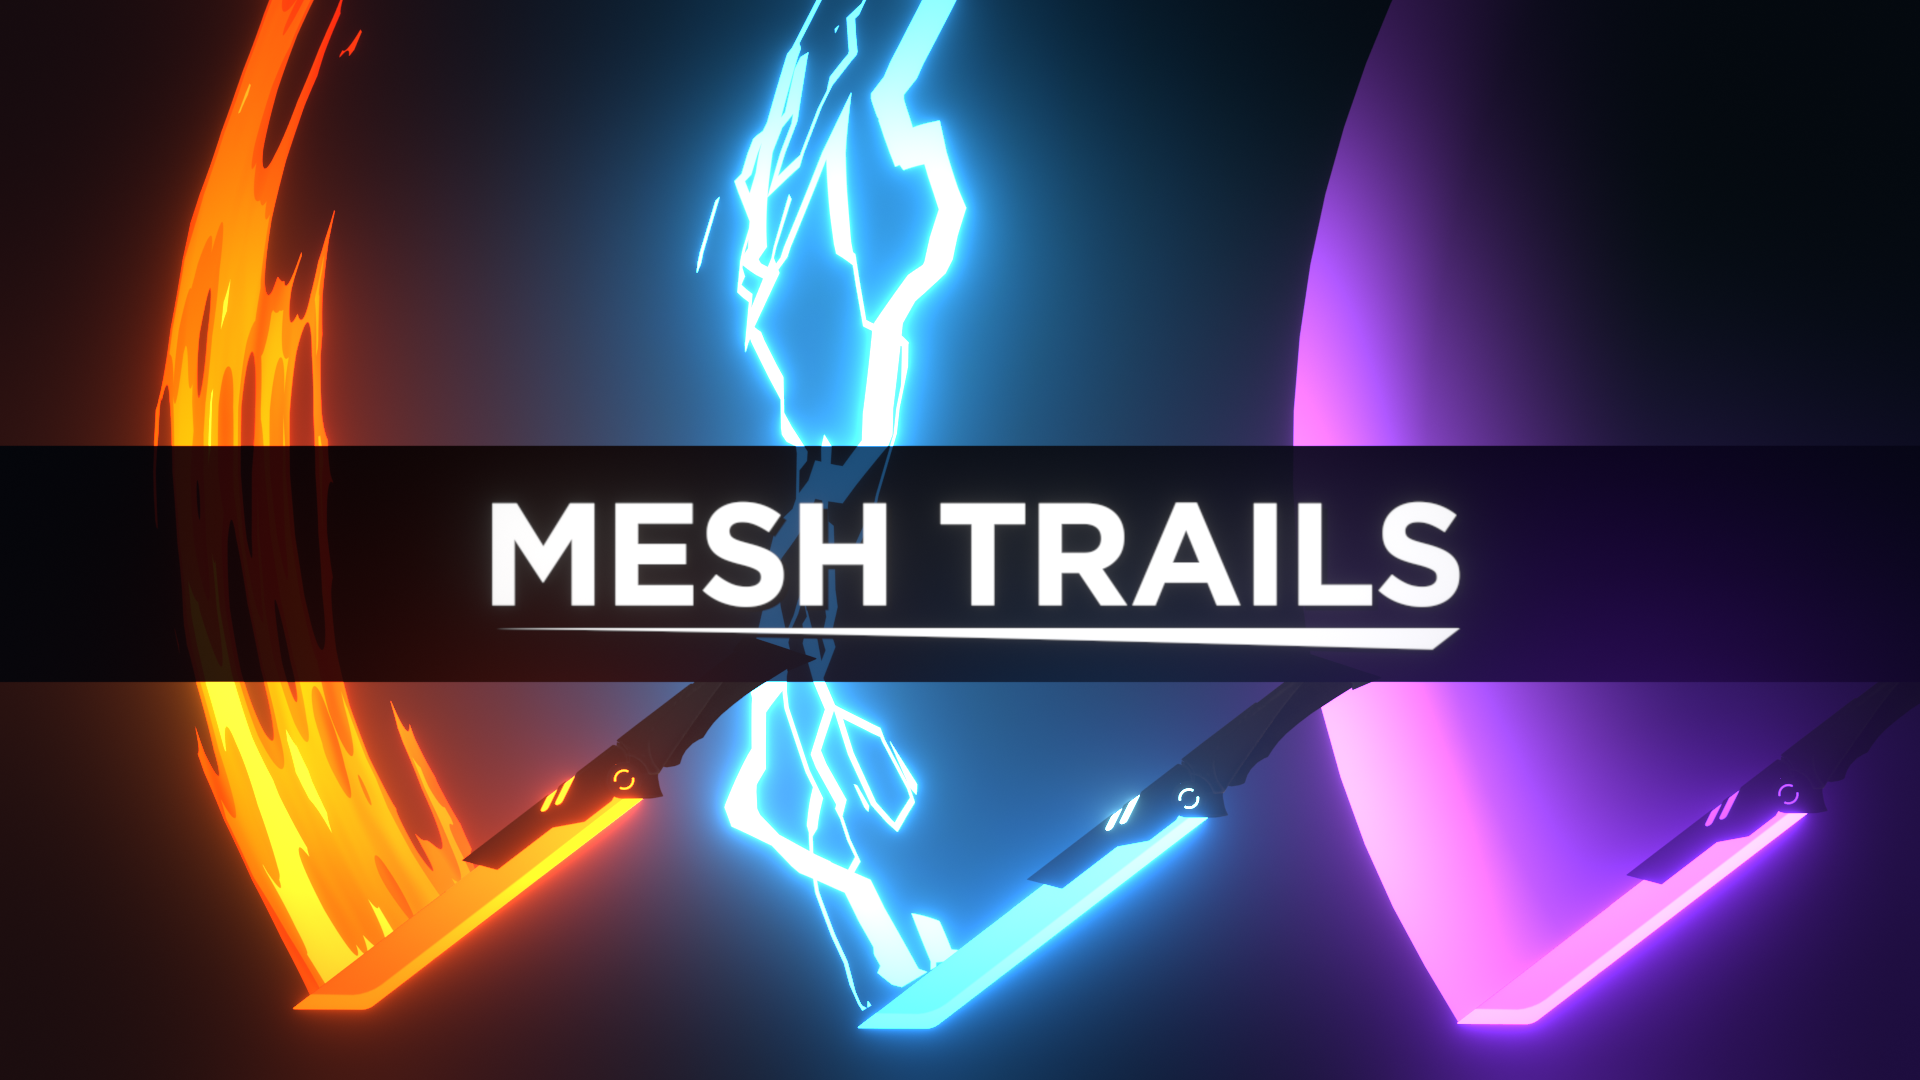 mesh trails thumb11d0fdc6de8175e024